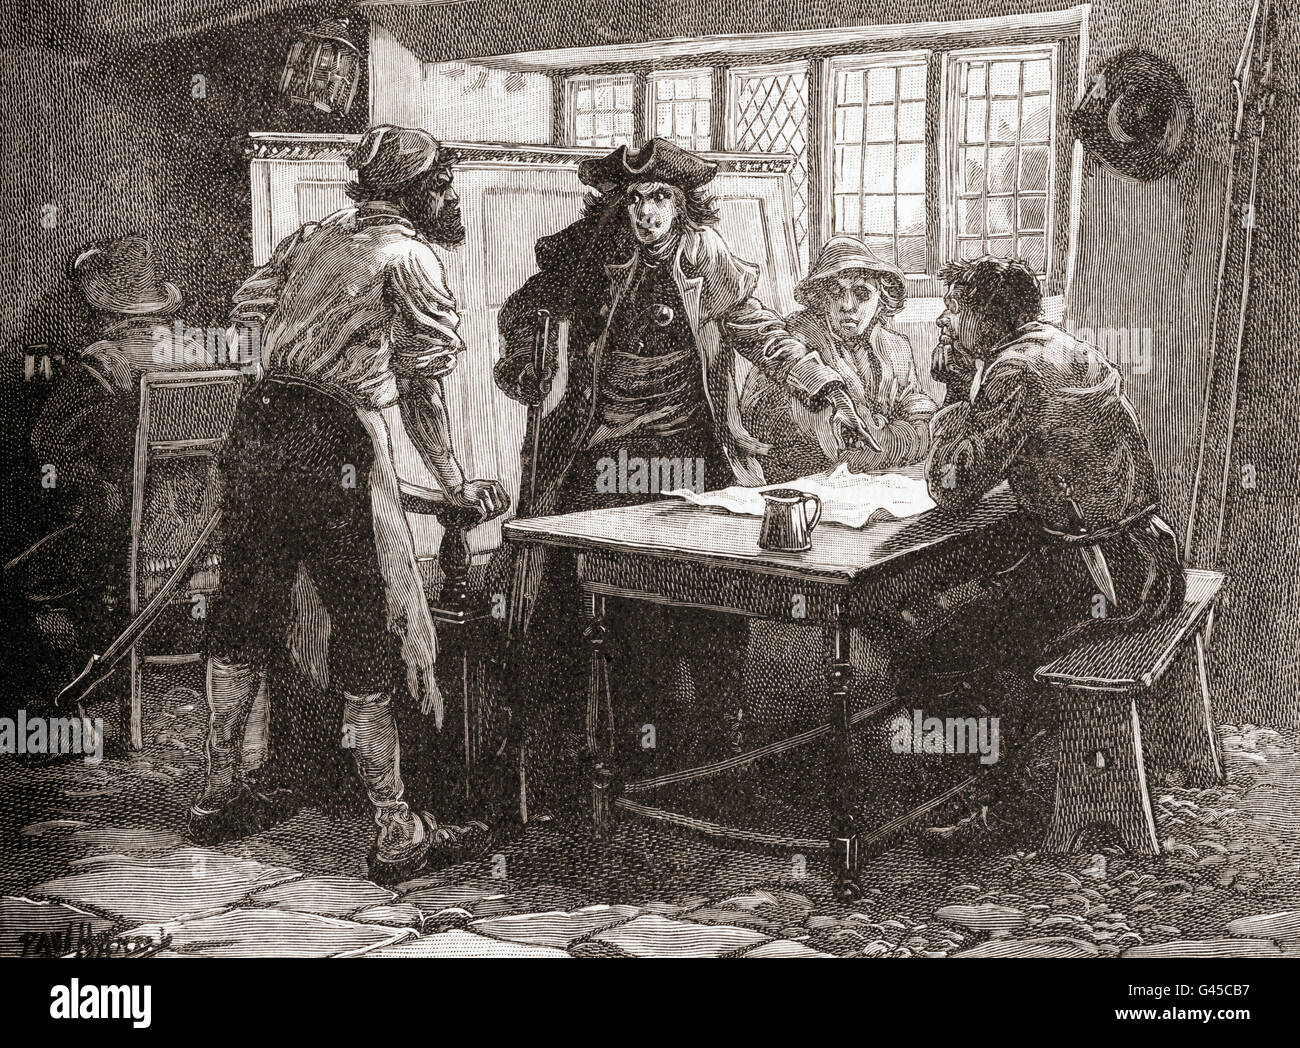 "Nottingham Kapitän" und die Agitatoren, die zum Sturz der britischen Regierung Planung treffen im White Horse Pub, Pentrich, Derbyshire, England im Jahre 1817.  Jeremiah Brandreth, auch bekannt als die 'Nottingham Captain", 1785 – 1817. Arbeitslose Strumpf-Hersteller wegen Verrats enthauptet wurde. Stockfoto